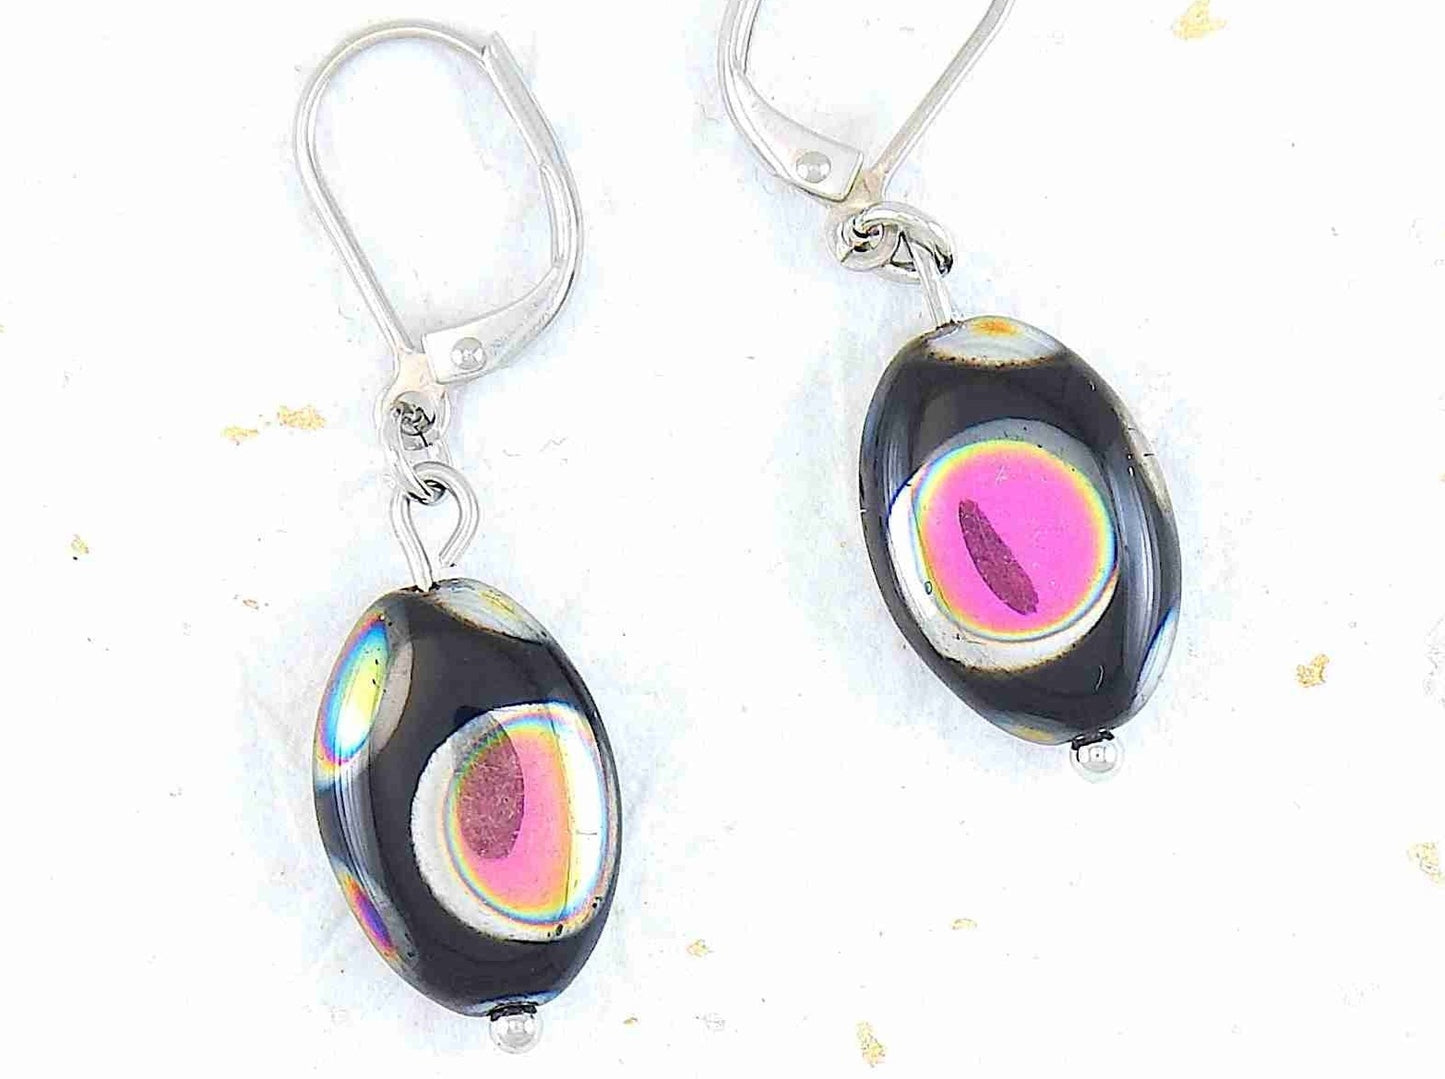 Boucles d'oreilles courtes petits ovales de verre tchèque brillant noir, choix de 2 motifs (pois multicolores, quadrillé argenté), crochets à levier acier inoxydable